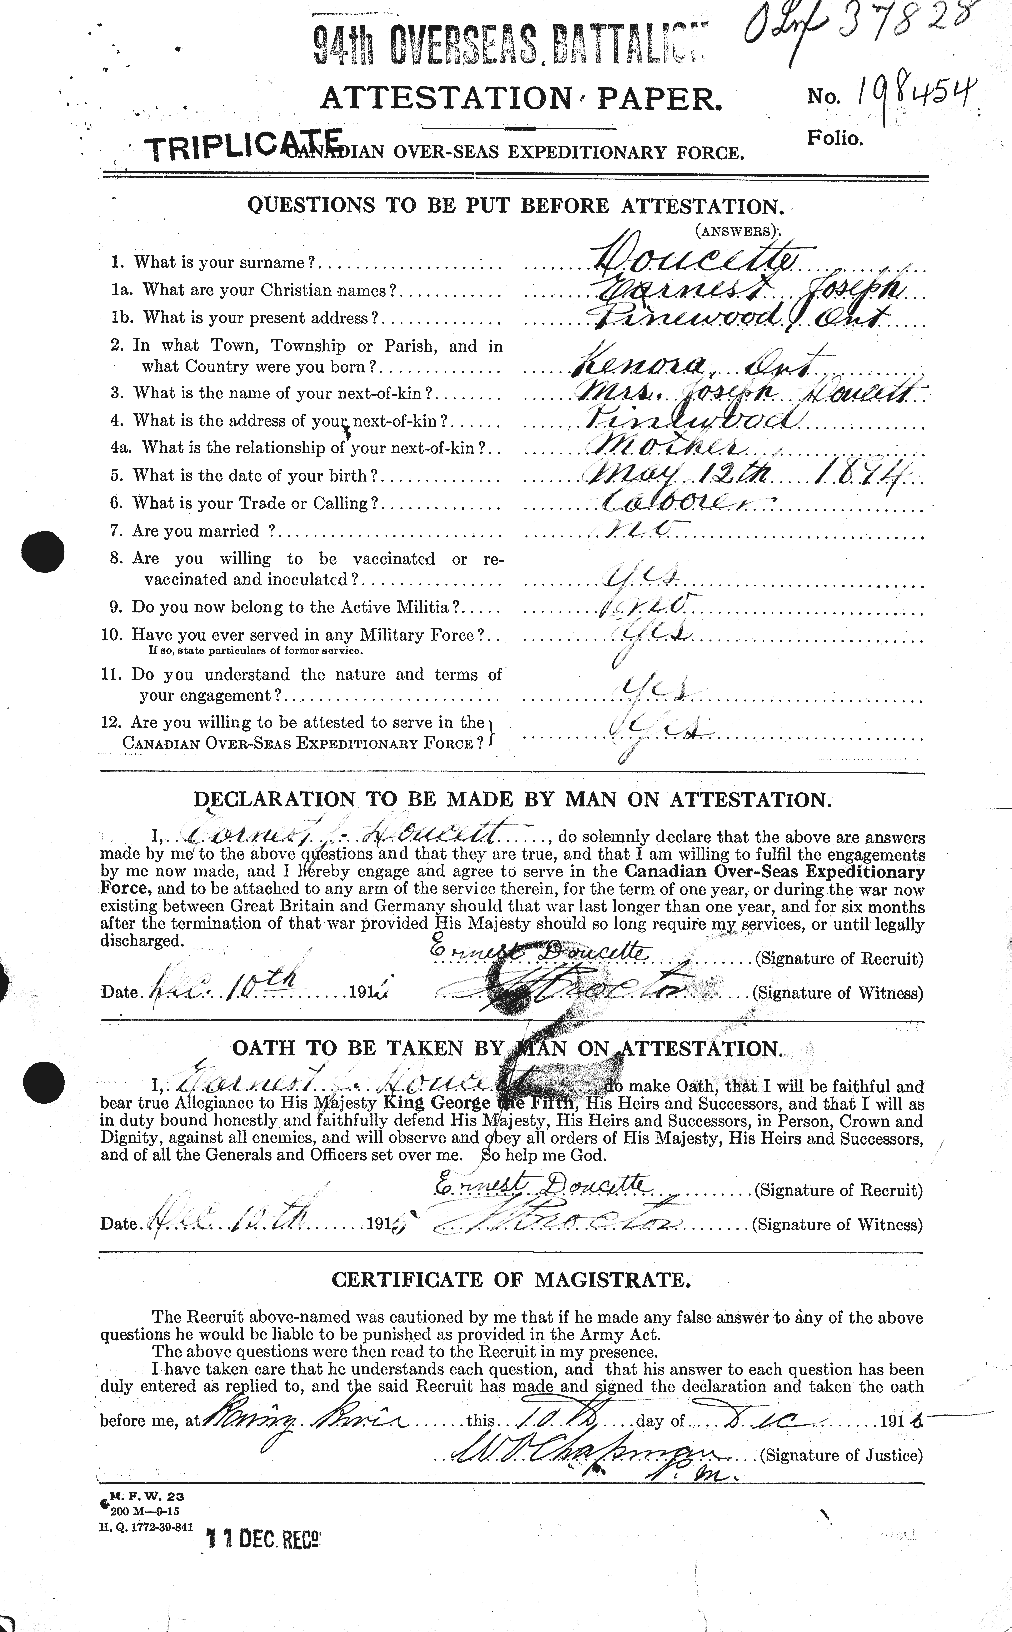 Dossiers du Personnel de la Première Guerre mondiale - CEC 294066a